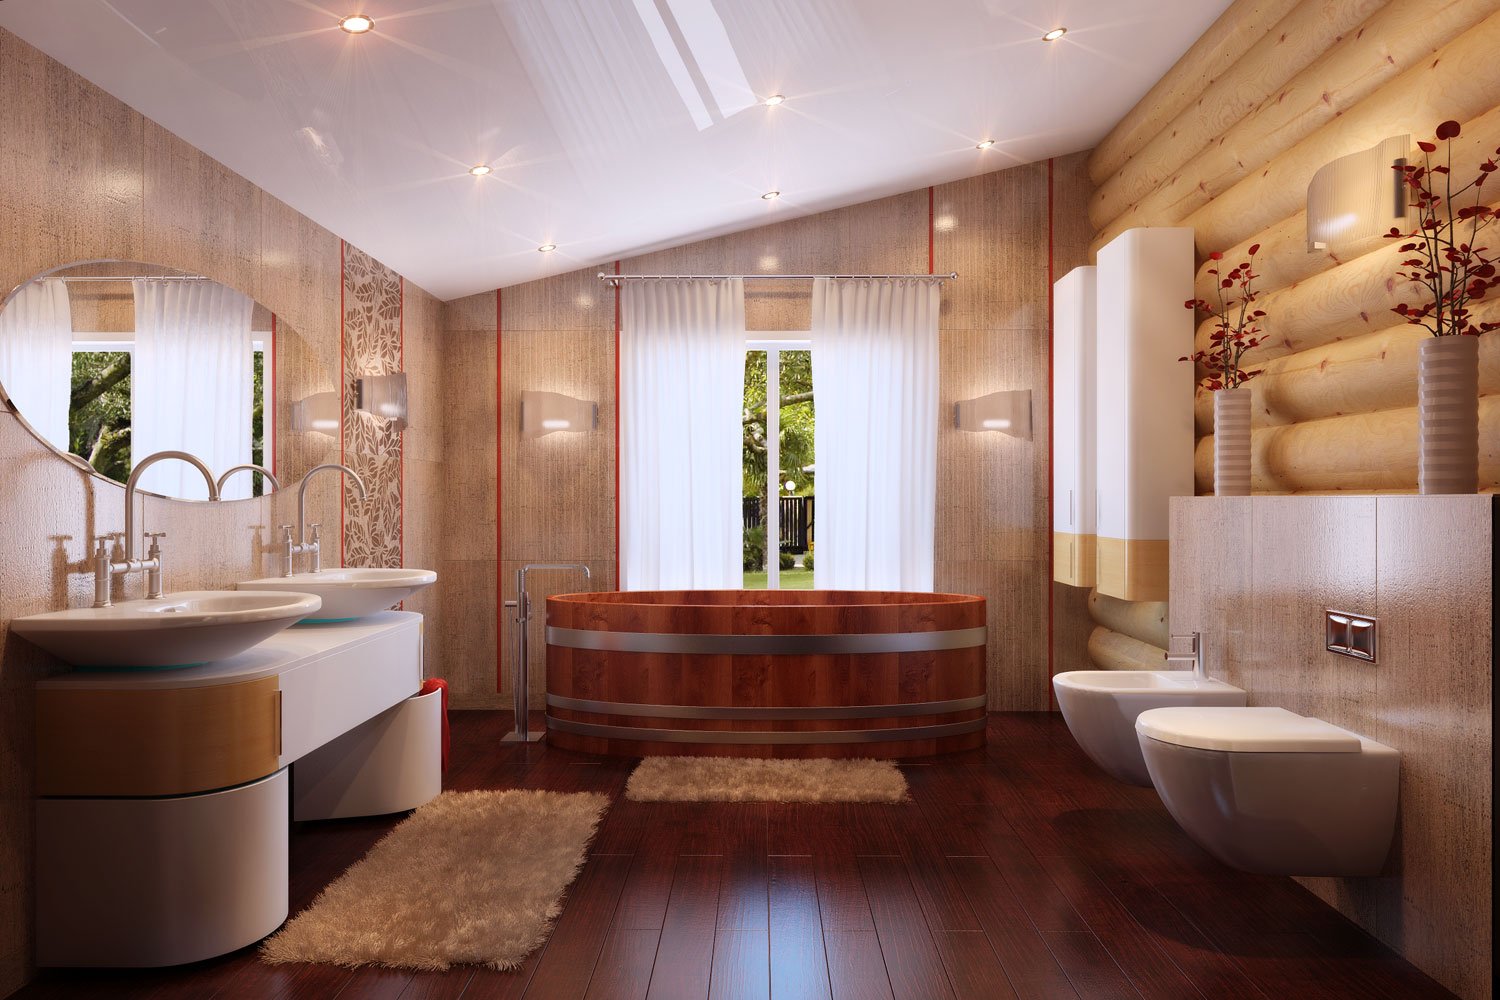 Отделка комнат потолки. Отделка комнаты. Потолок в ванной. Натяжной потолок в деревянном доме. Деревянный потолок в ванной.